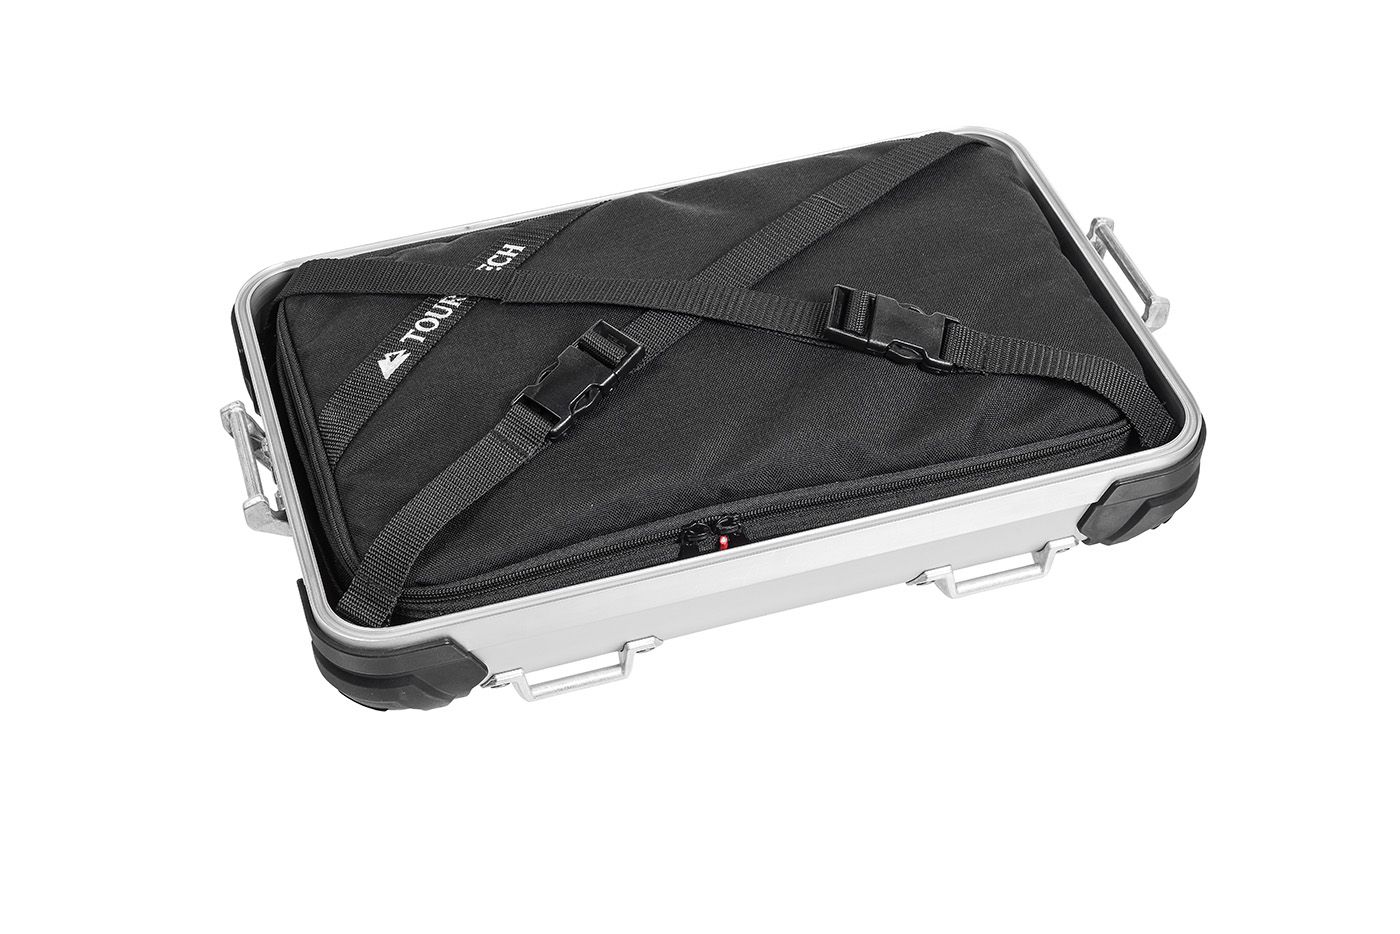 ZEGA Evo case lid inner bag 45 for 45 litres cases